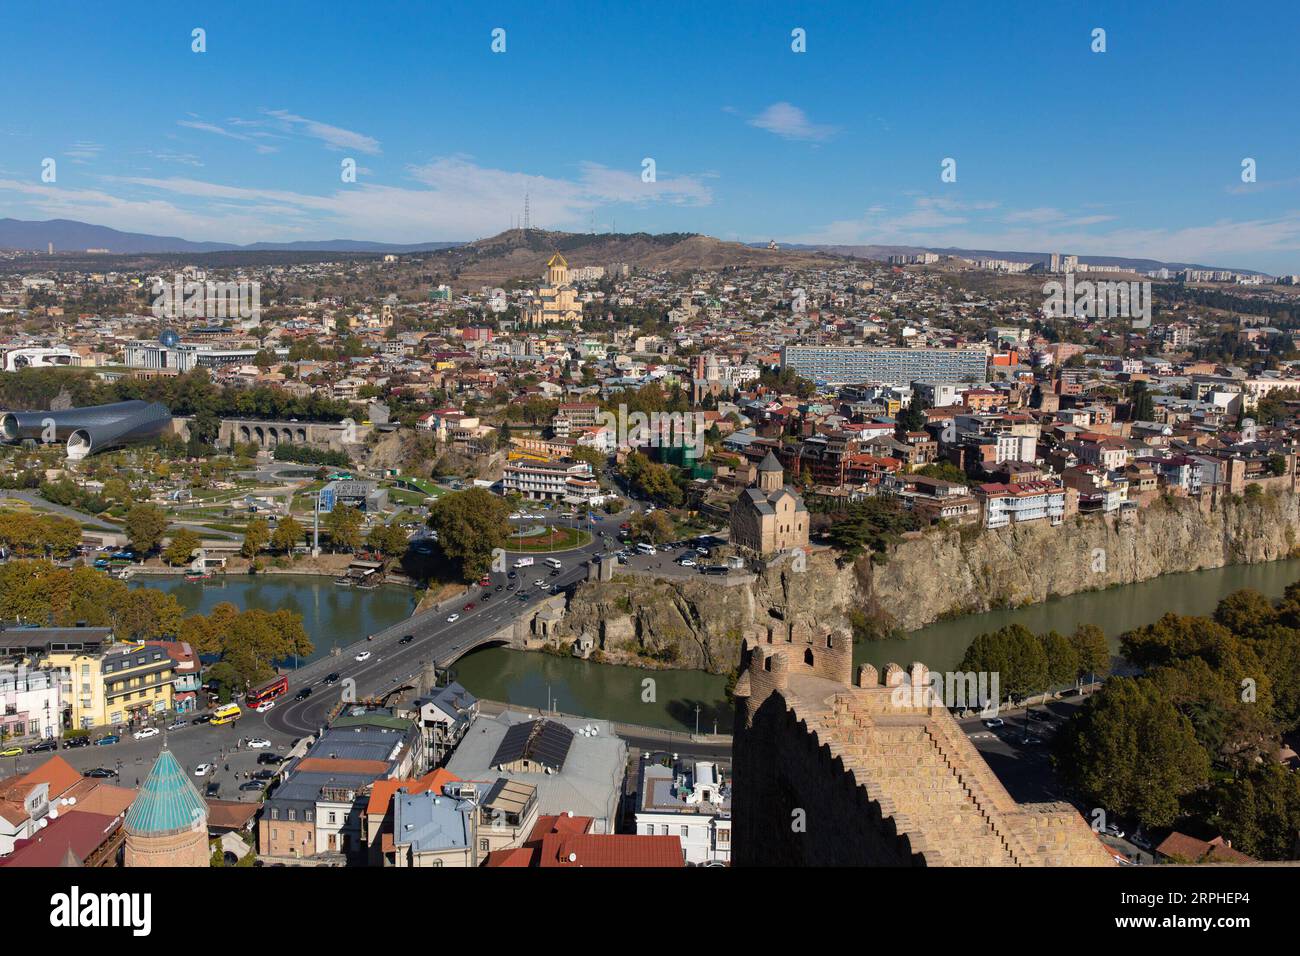 191106 -- TBILISI, Nov. 6, 2019 -- Photo taken on Nov. 6, 2019 shows a view of Tbilisi, capital of Geogria.  GEORGIA-TBILISI-SCENERY BaixXueqi PUBLICATIONxNOTxINxCHN Stock Photo